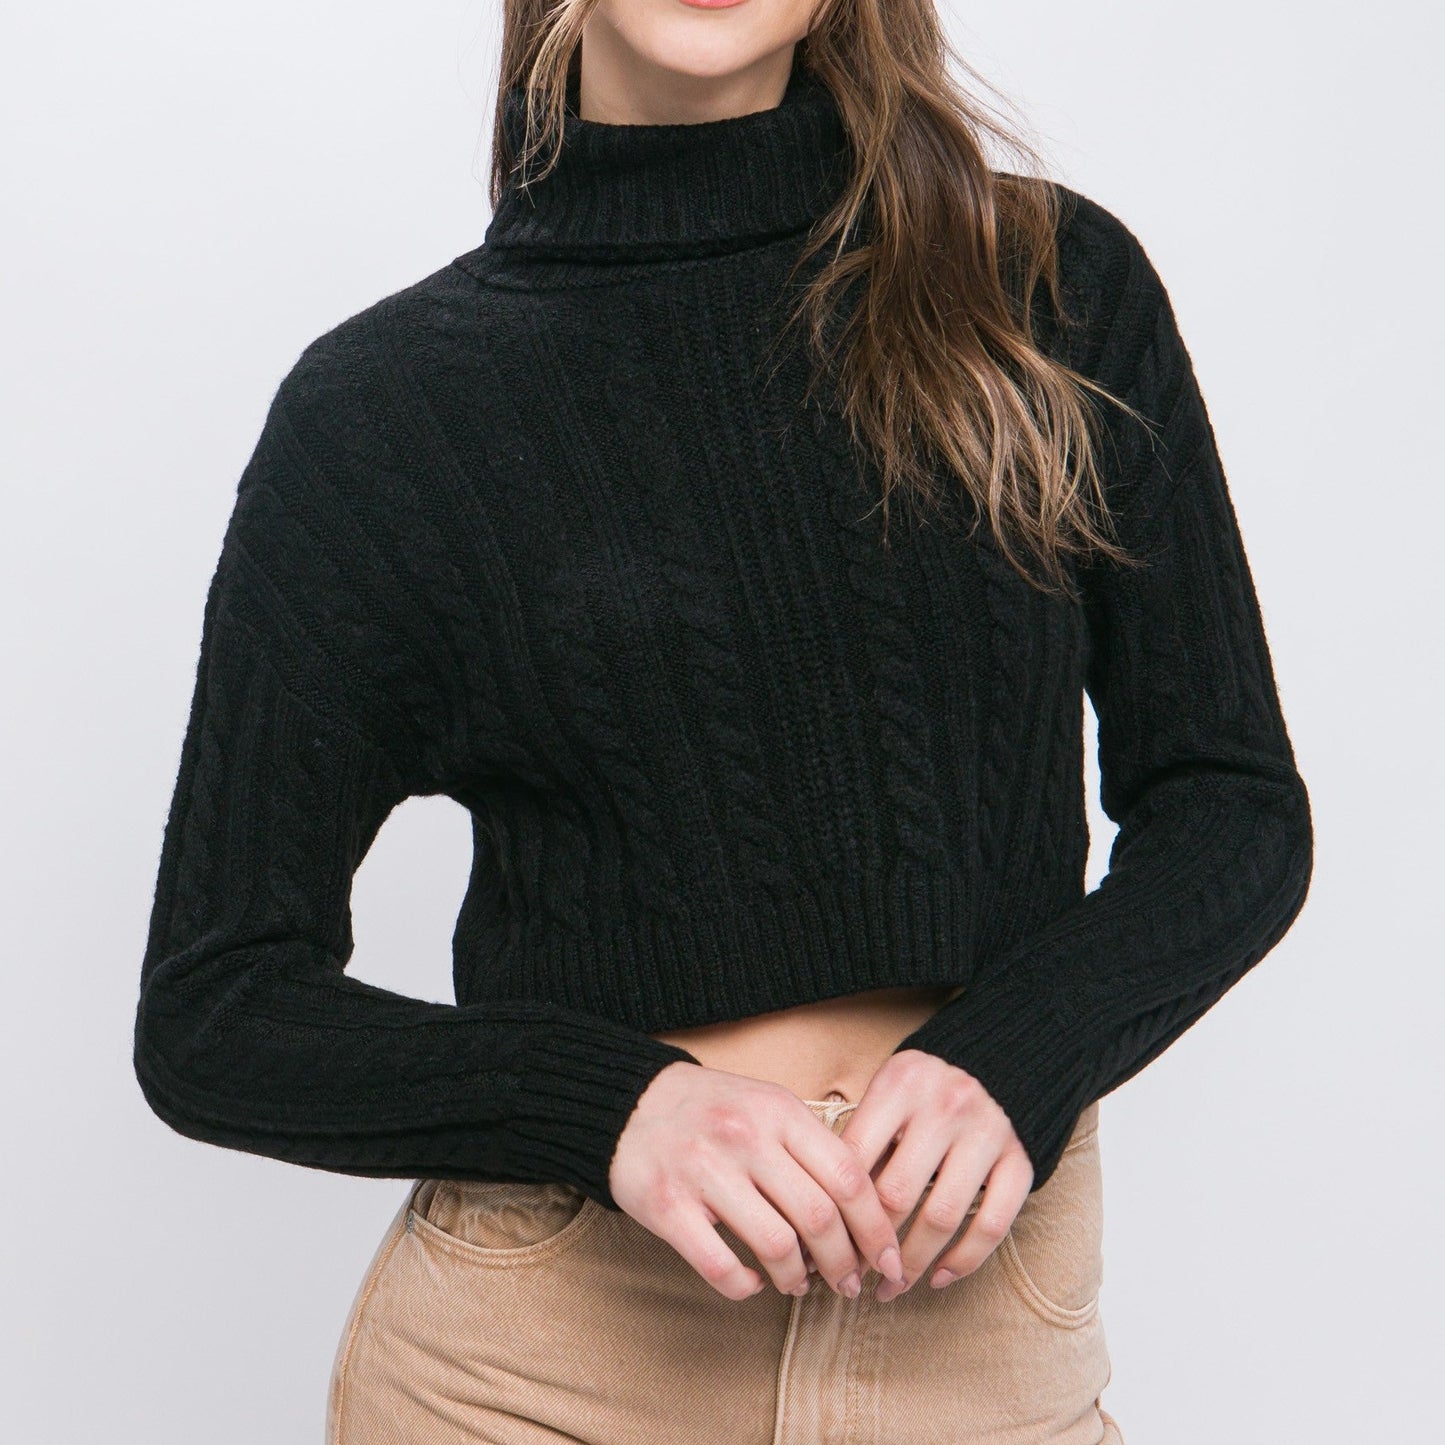 Heidi Cropped Sweater